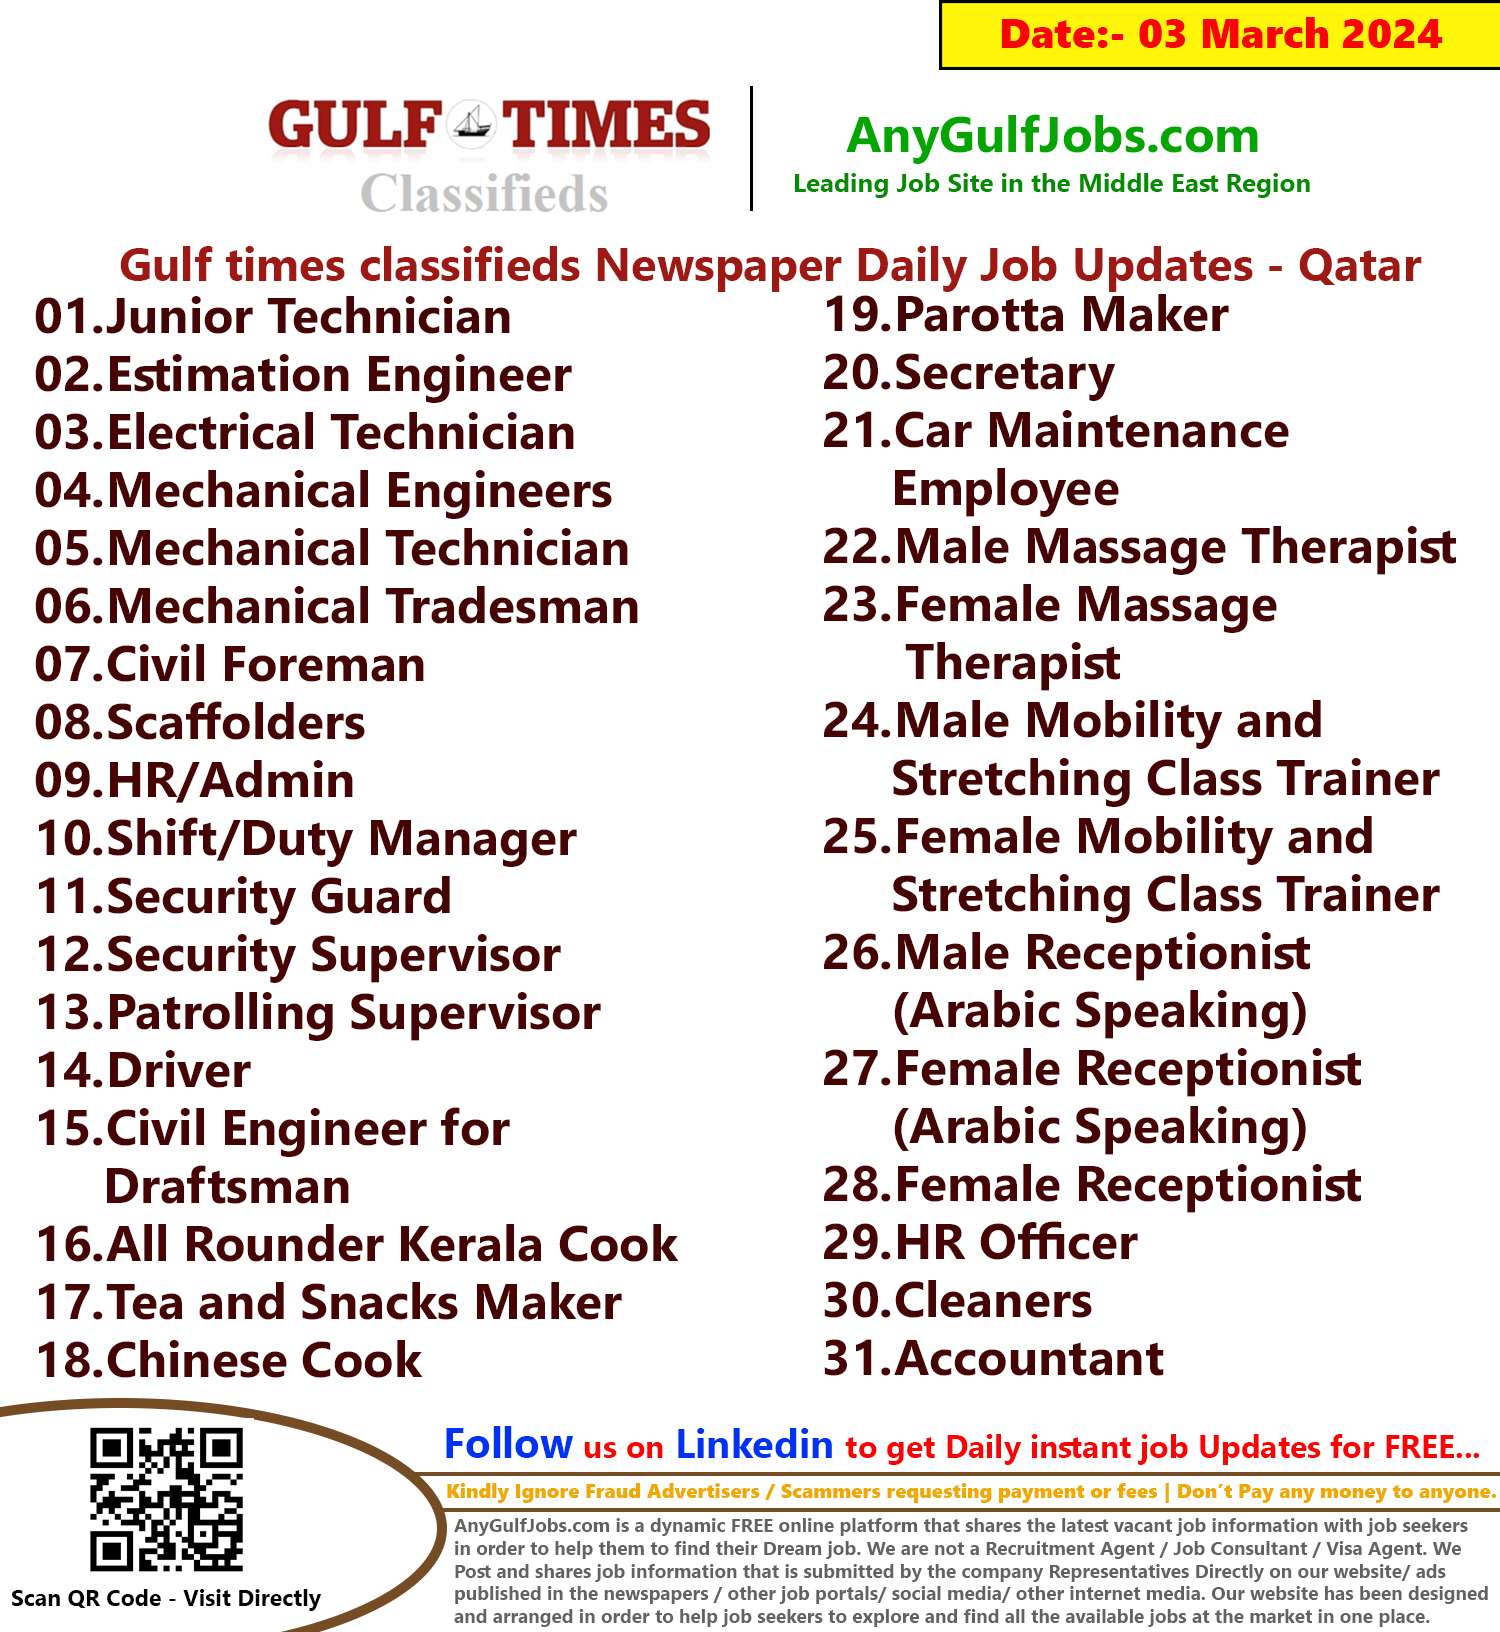 Gulf Times Classifieds Job Vacancies Qatar - 03 March 2024